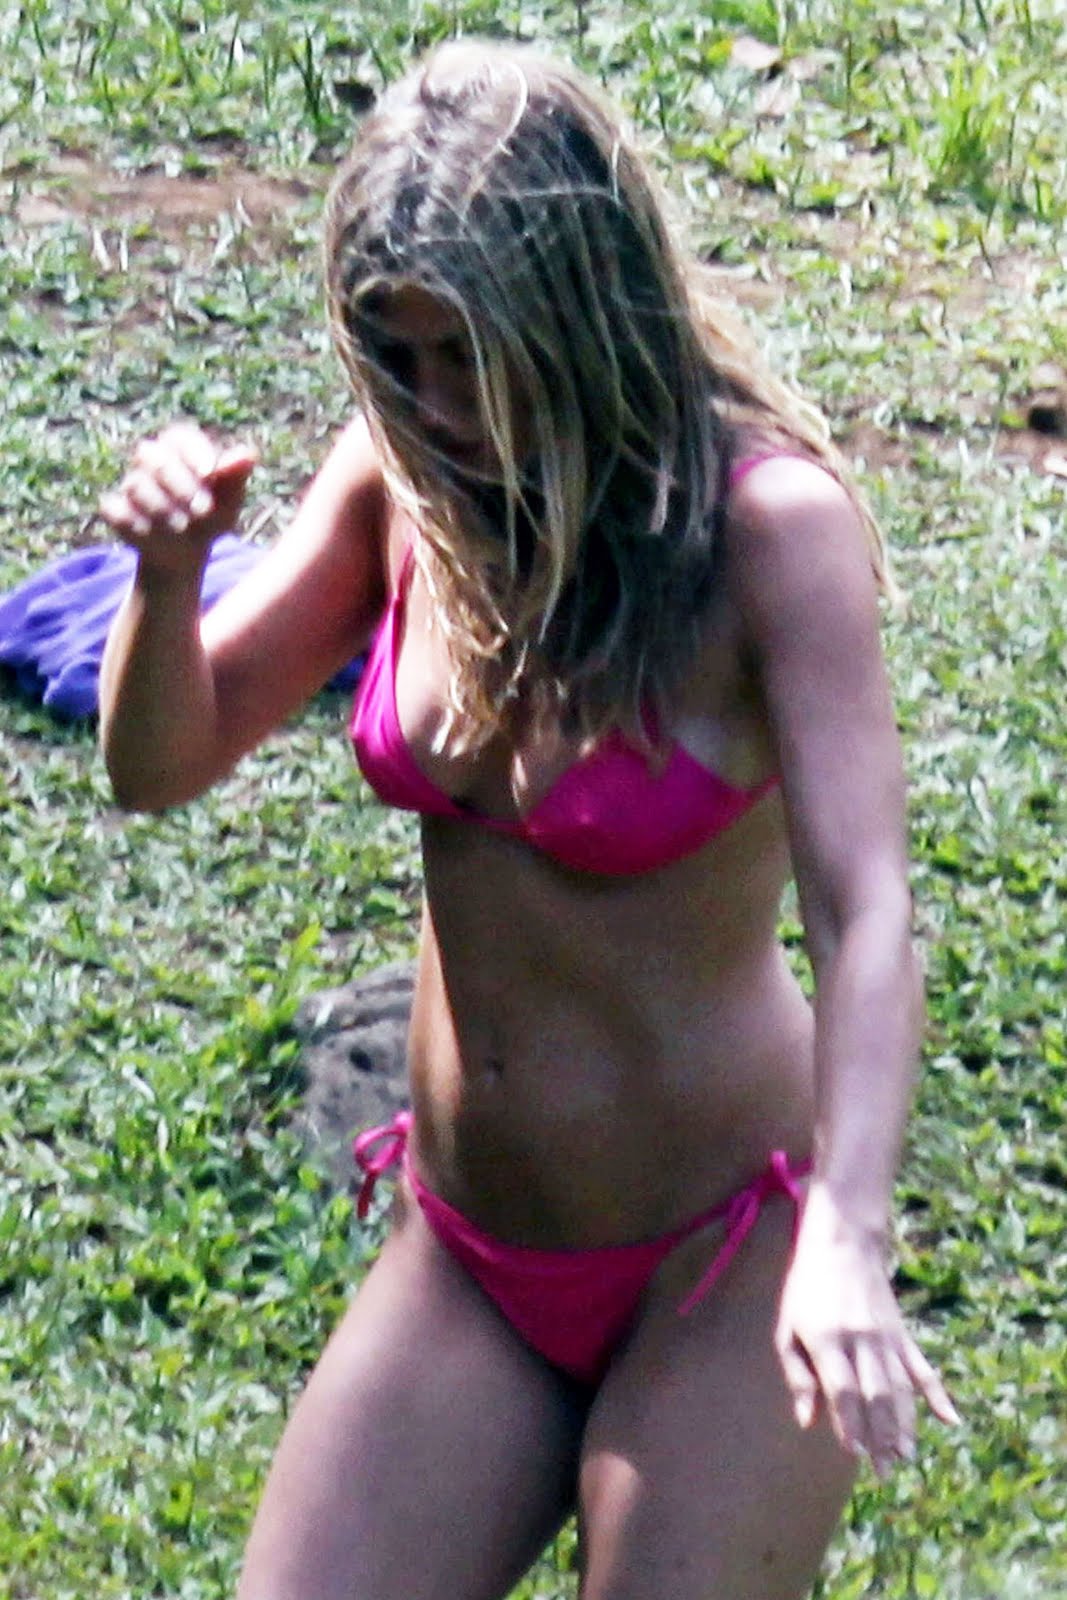 http://3.bp.blogspot.com/_tX-oD9Fr7iw/S_0qjmLVlgI/AAAAAAAAB-g/DcNZ28Cc0hM/s1600/jennifer-aniston-pink-bikini-08.jpg